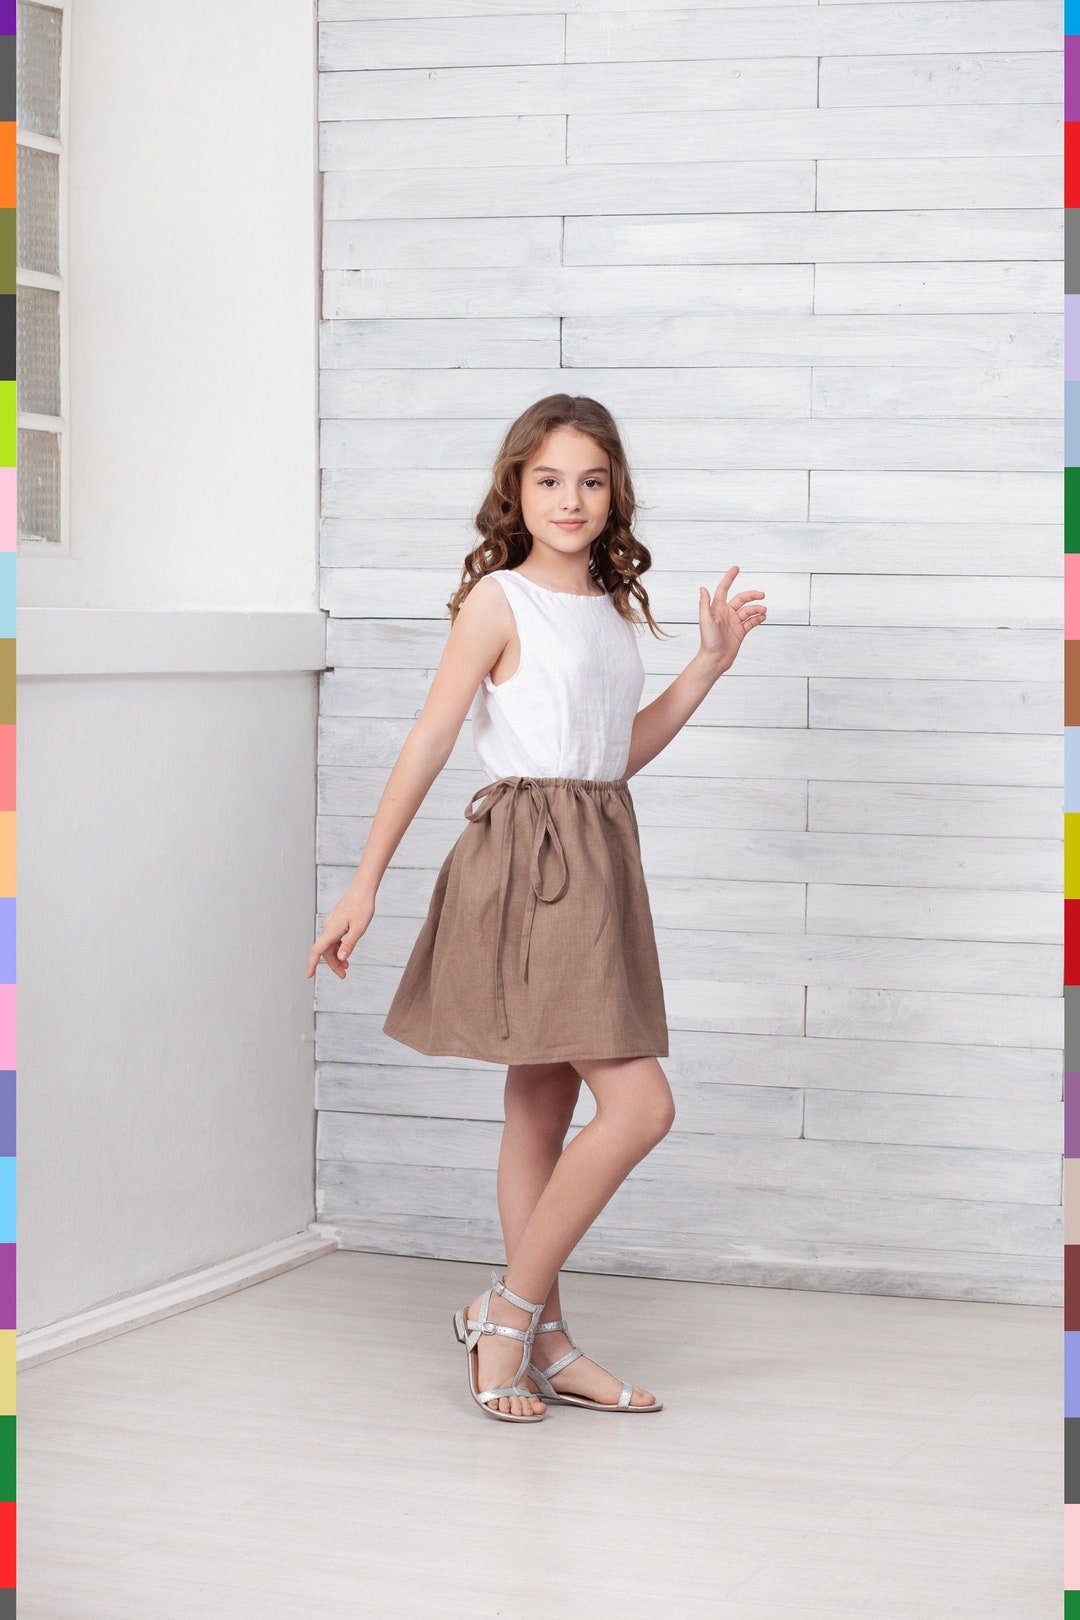 Brown Kids Skirt. Cinnamon Girls Skirt. Simple Kids Skirt. - Etsy